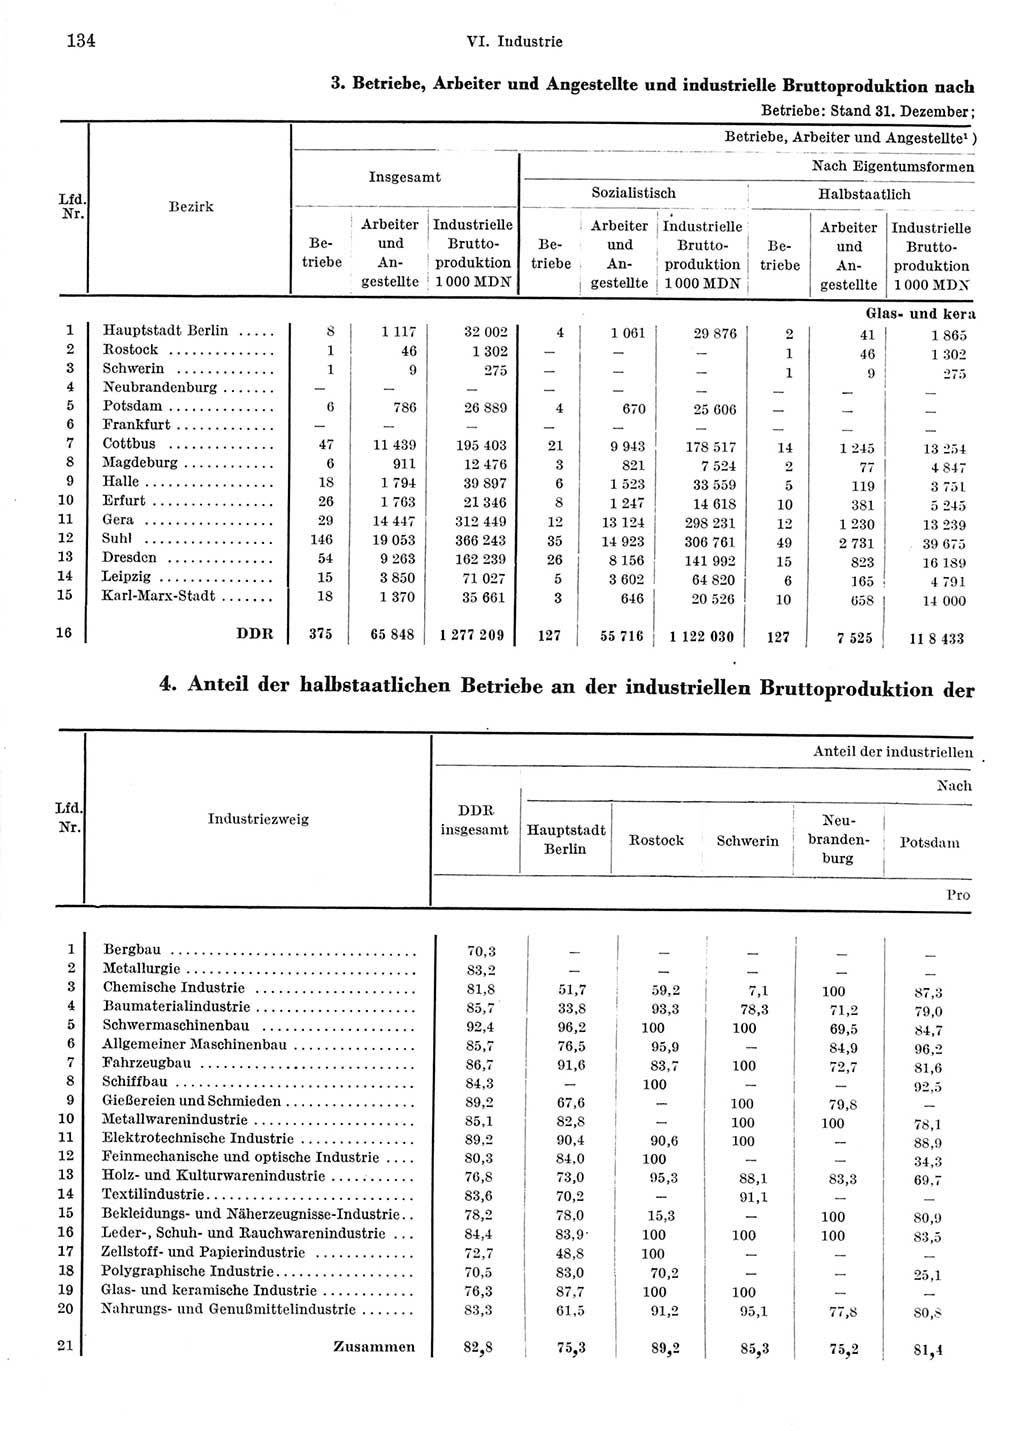 Statistisches Jahrbuch der Deutschen Demokratischen Republik (DDR) 1967, Seite 134 (Stat. Jb. DDR 1967, S. 134)